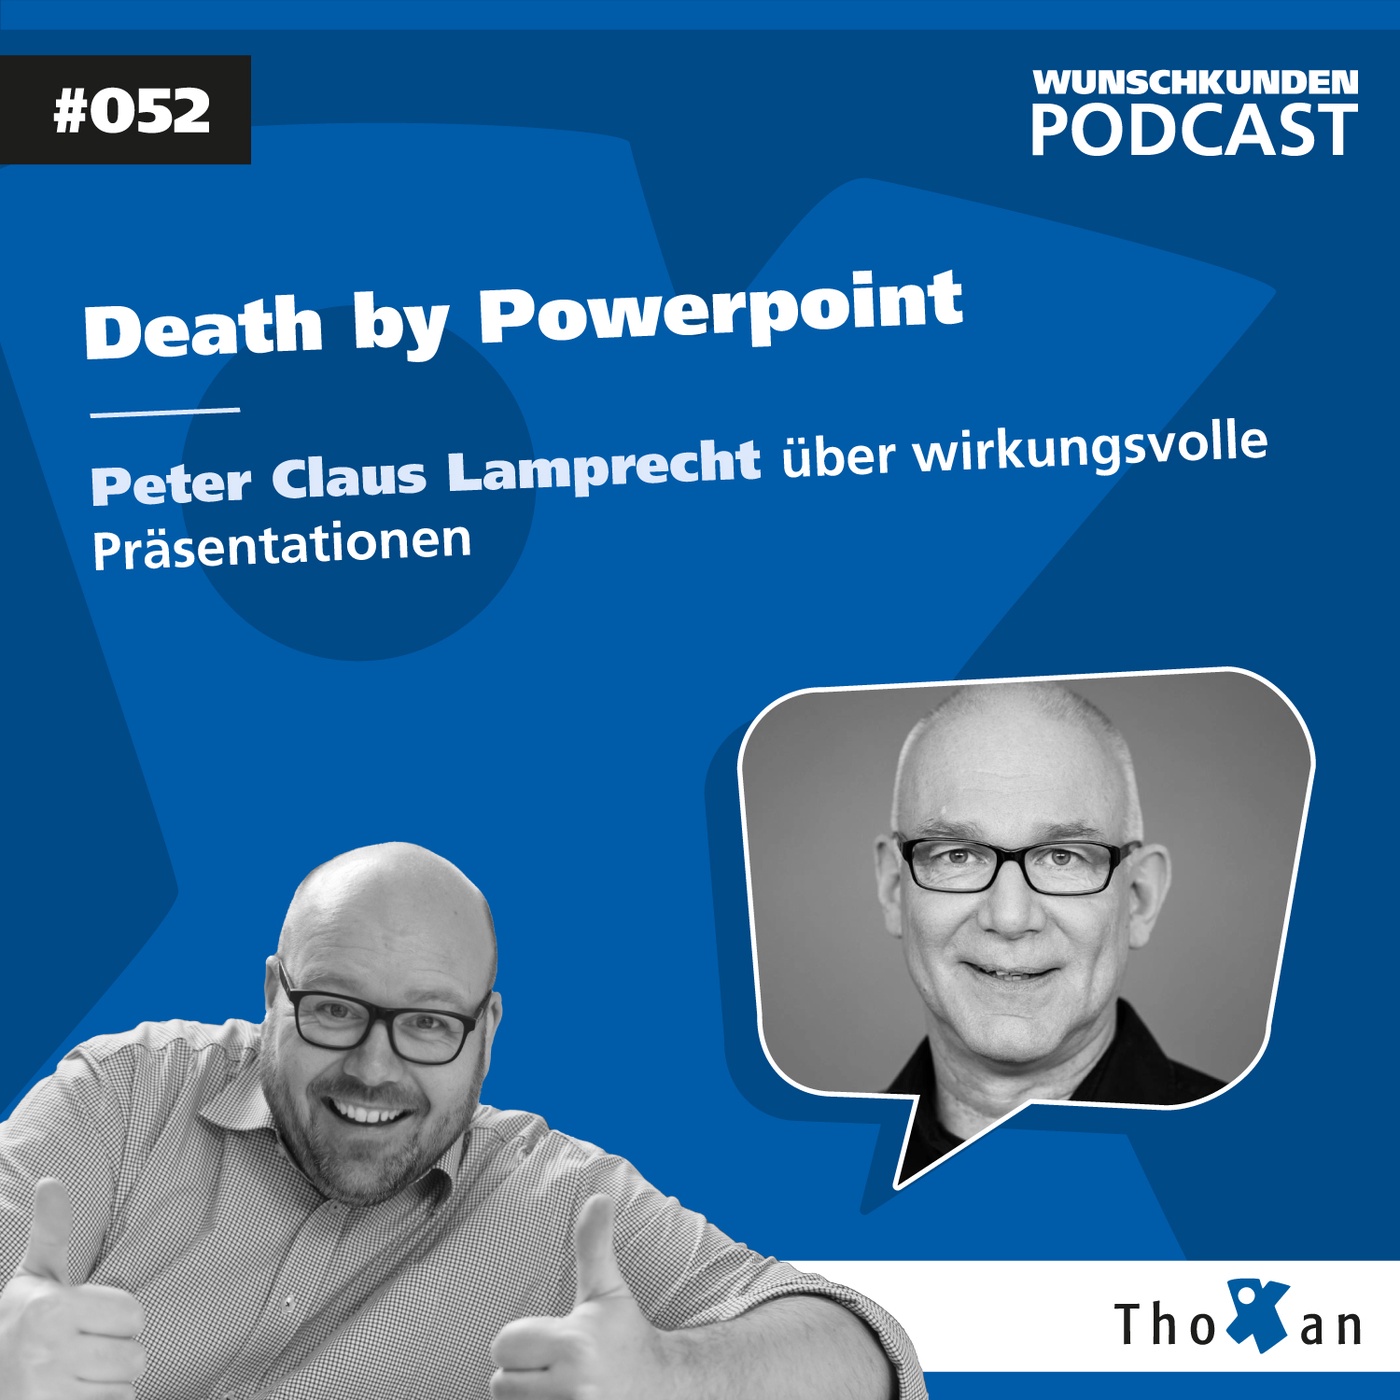 Death by Powerpoint: Peter Claus Lamprecht über wirkungsvolle Präsentationen